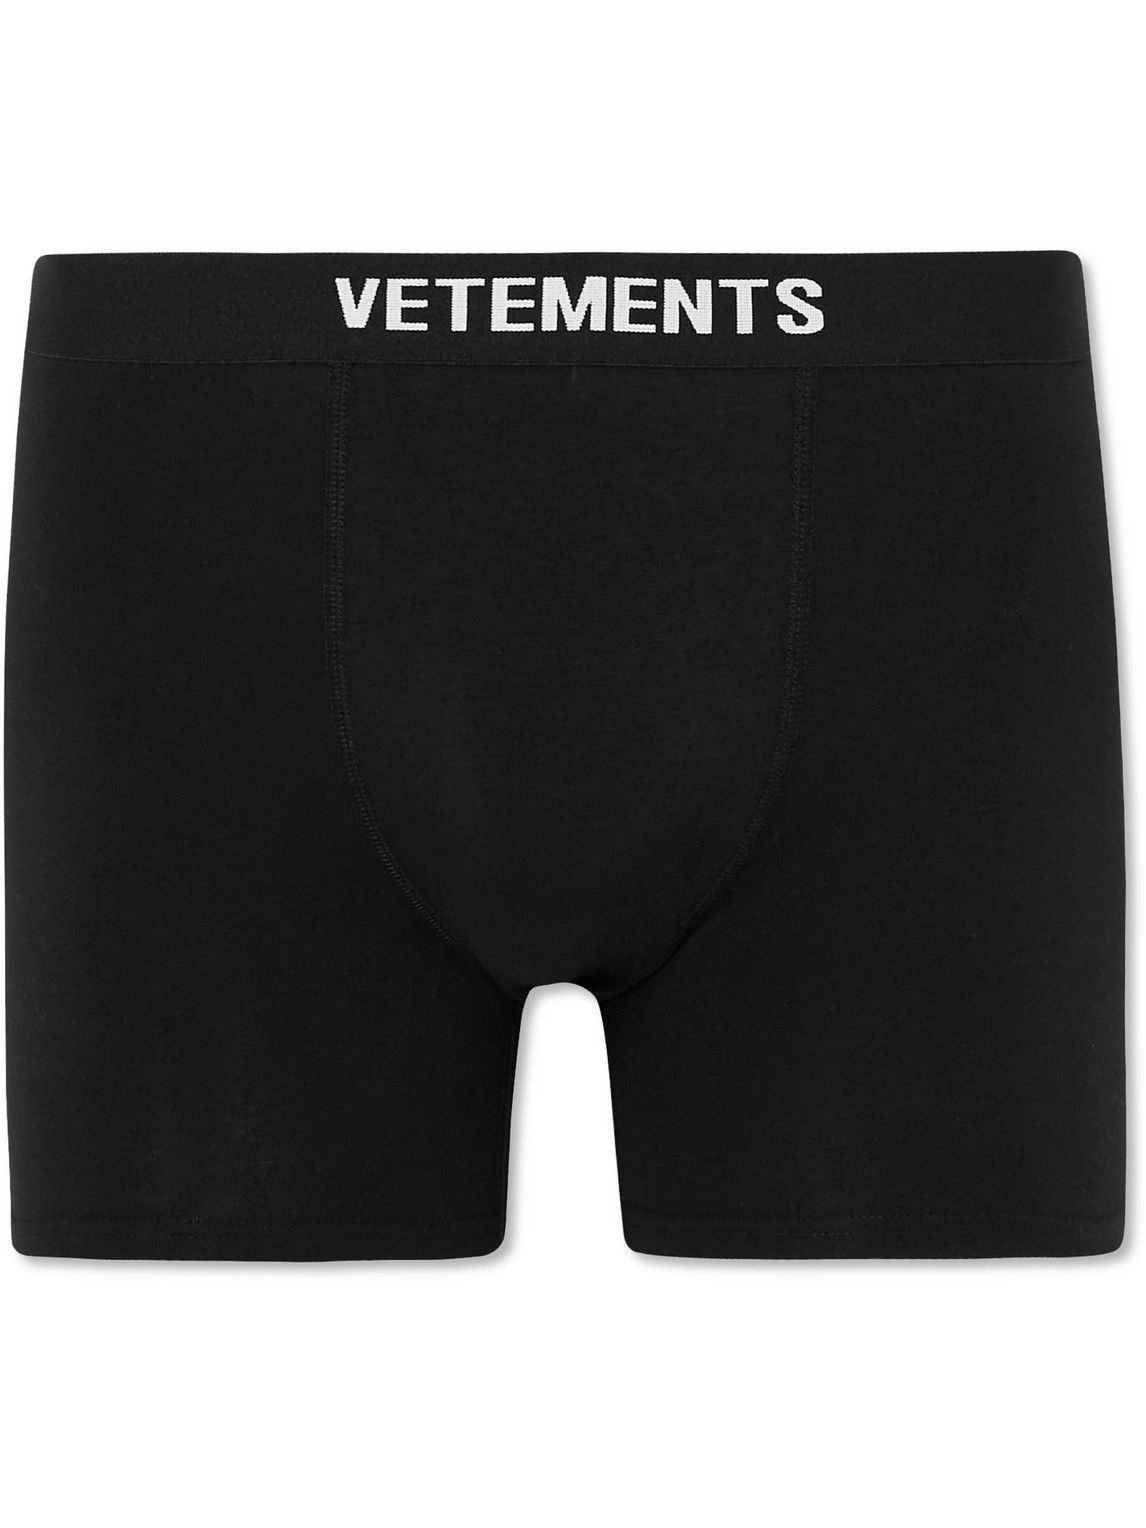 VETEMENTS - Stretch-Cotton Boxer Briefs - Black Vetements